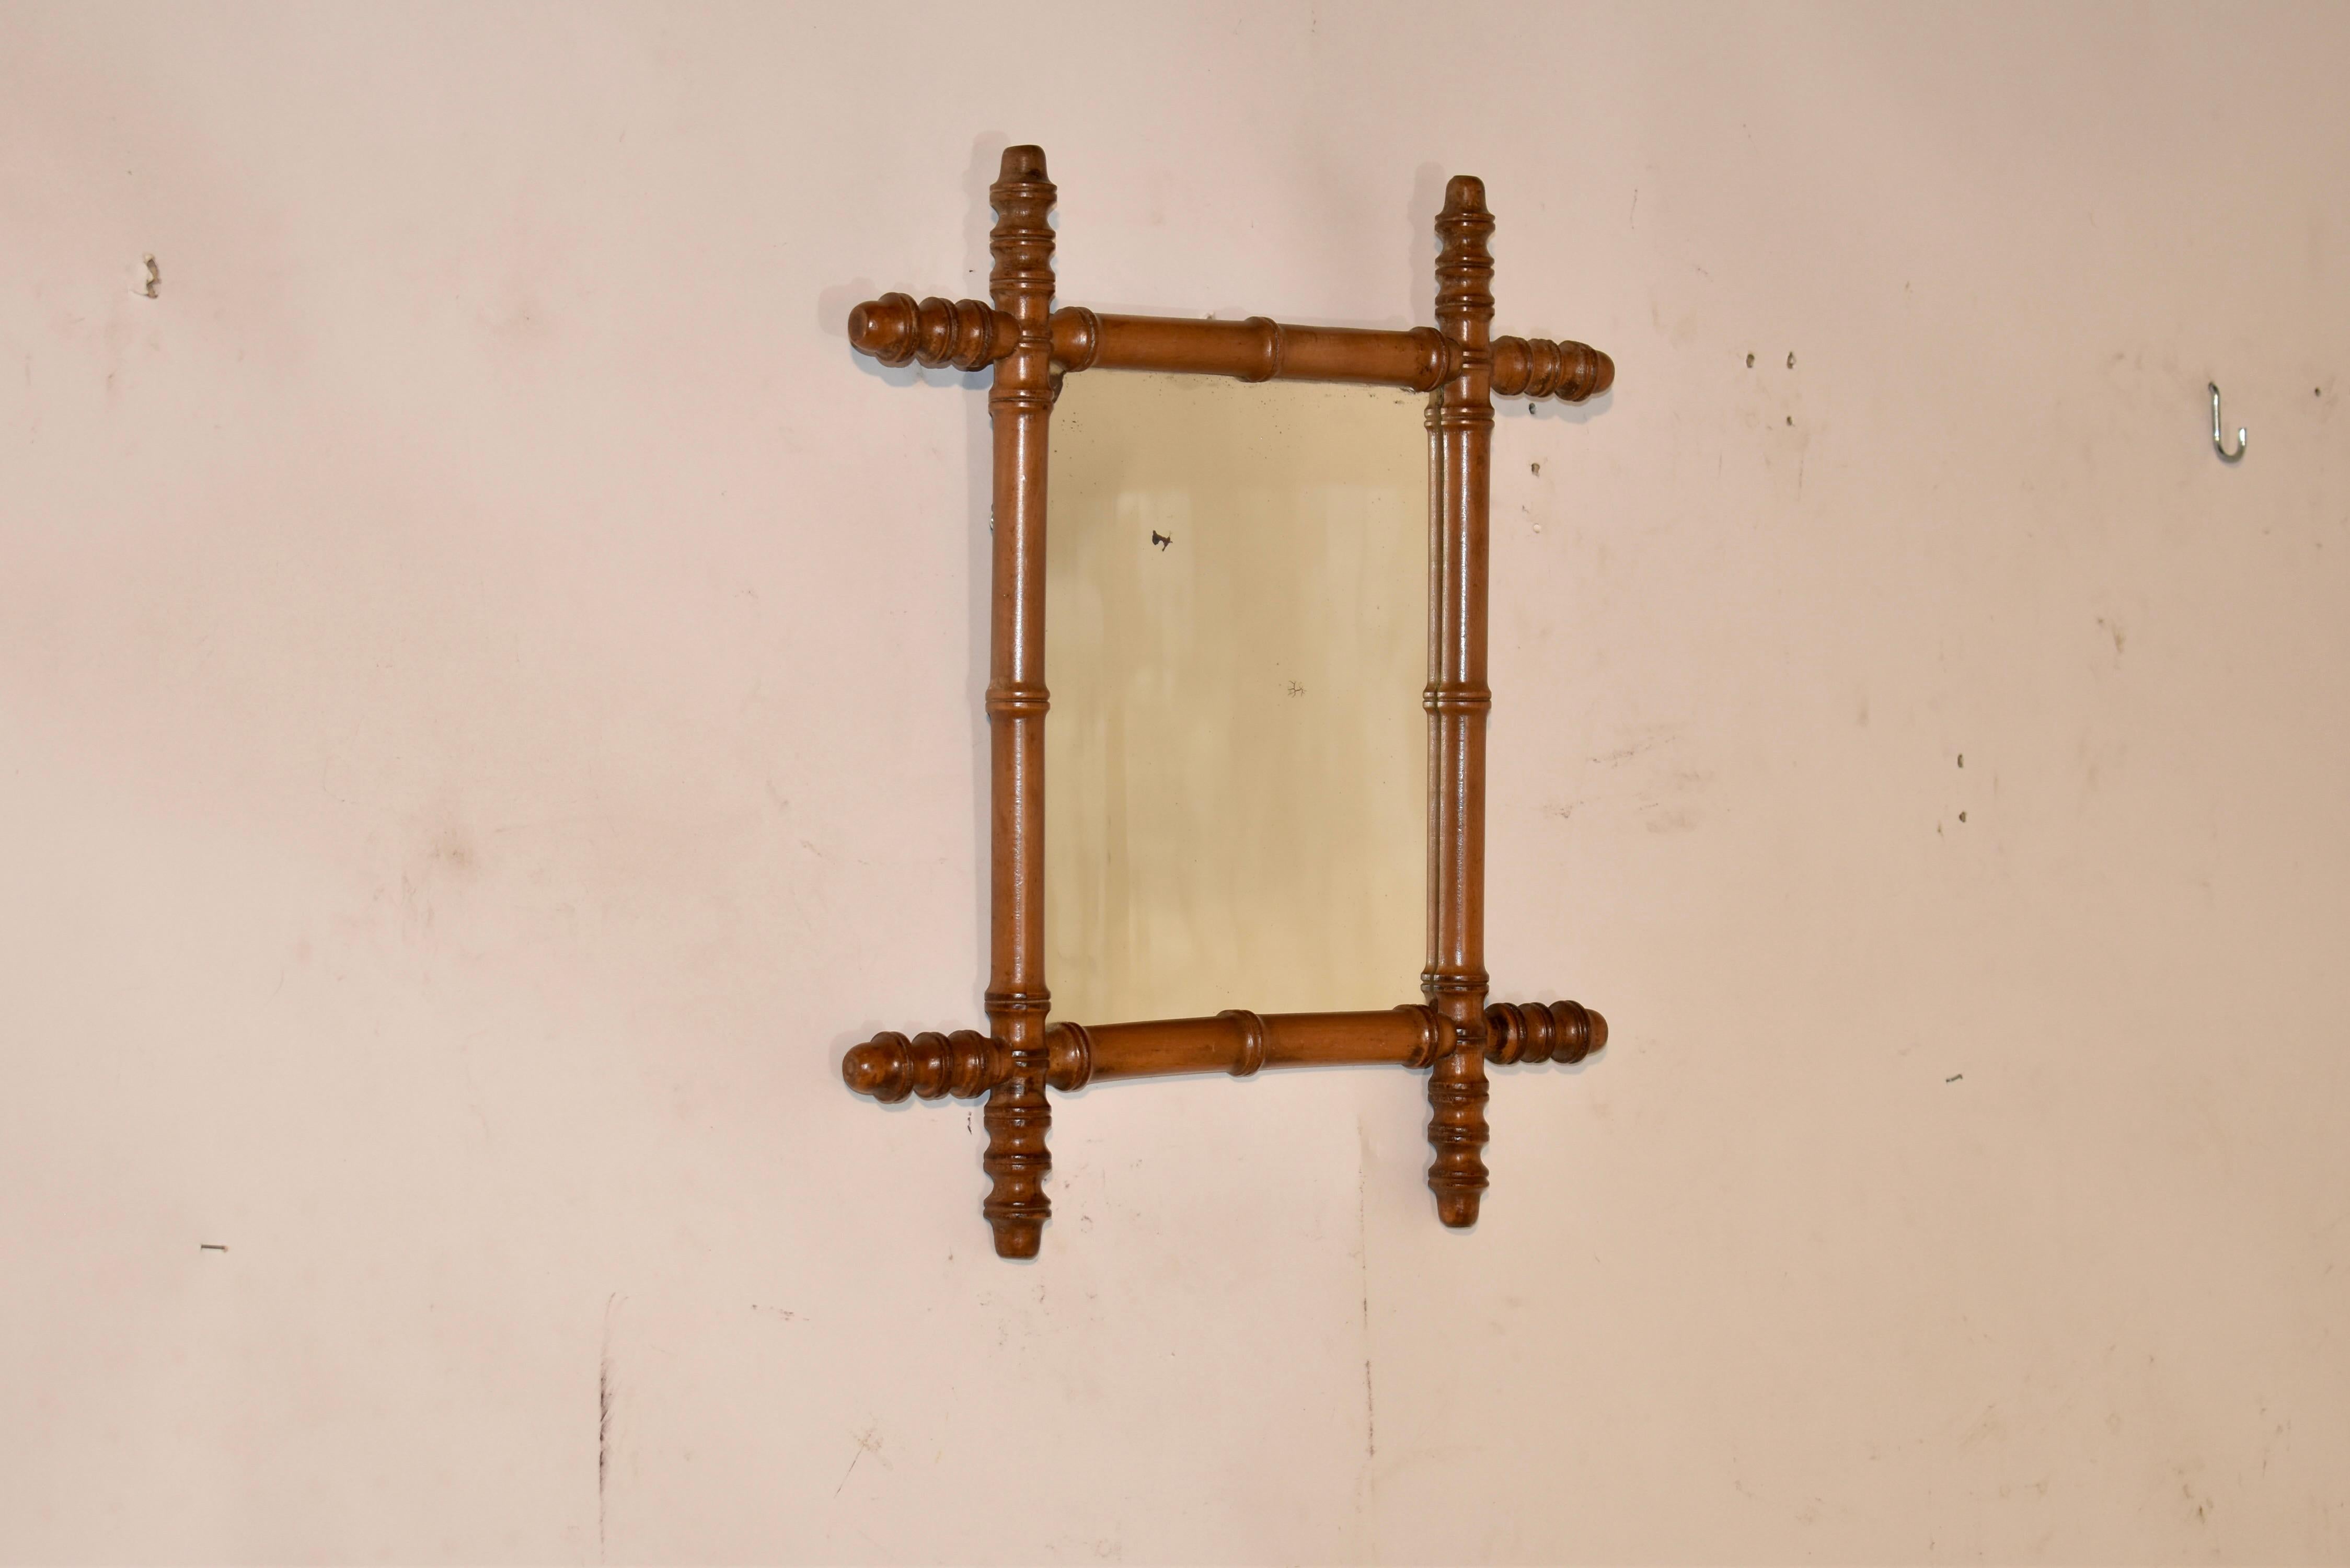 Kirschbaumspiegel aus Frankreich, 19. Jahrhundert. Der Rahmen ist aus Kirschbaumholz gefertigt und von Hand so gedrechselt, dass er wie Bambus aussieht. Der Rahmen umgibt einen Spiegel, der original zu sein scheint. Der Spiegel ist abgenutzt, wie es